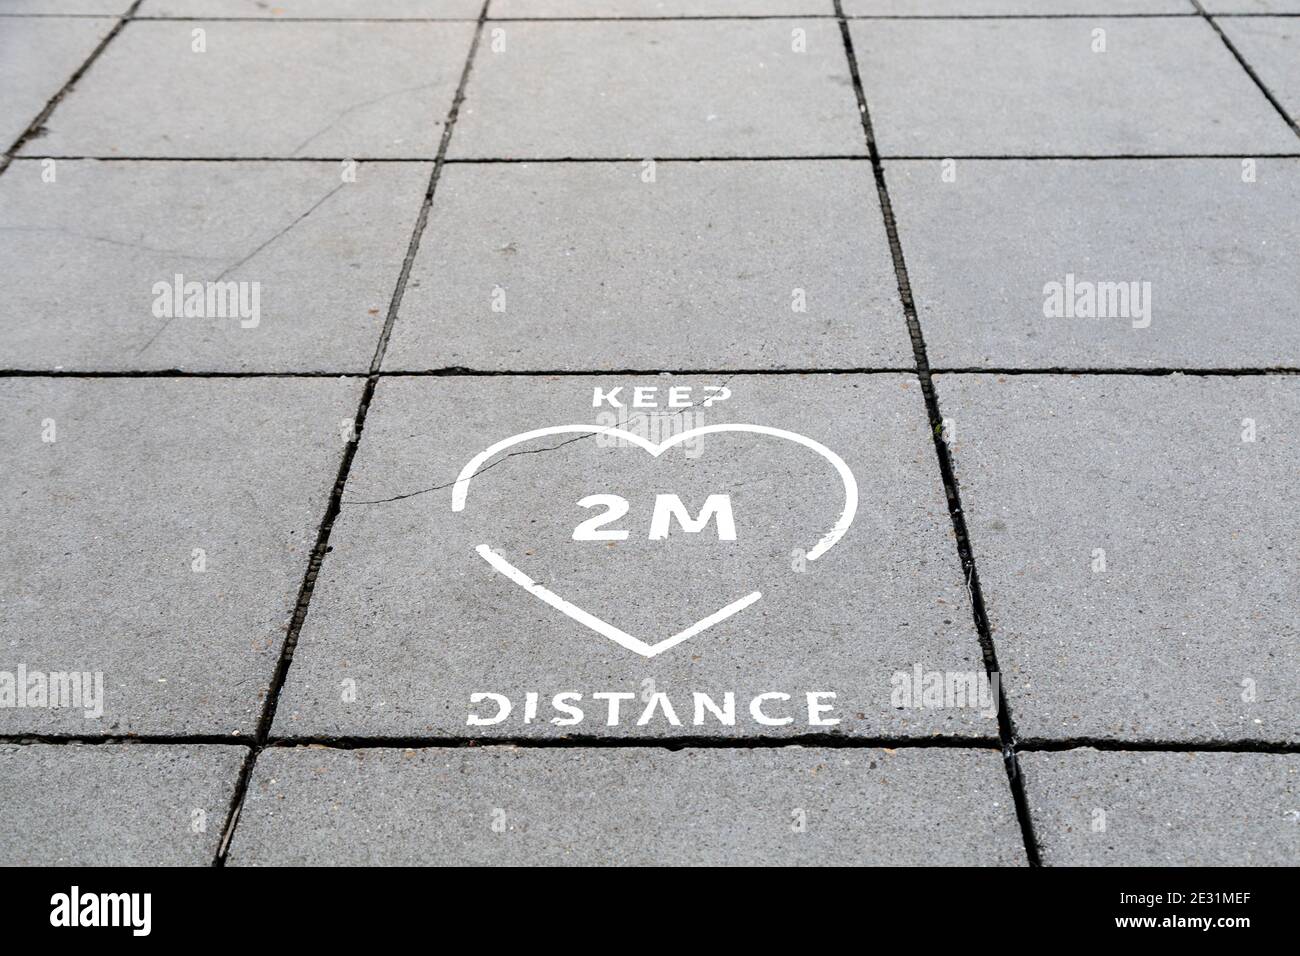 9 gennaio 2021 Londra, Regno Unito - Firma sul terreno a Charing Cross per ricordare alle persone di mantenere una distanza di 2 m quando si entra nella metropolitana durante Coronavirus Foto Stock